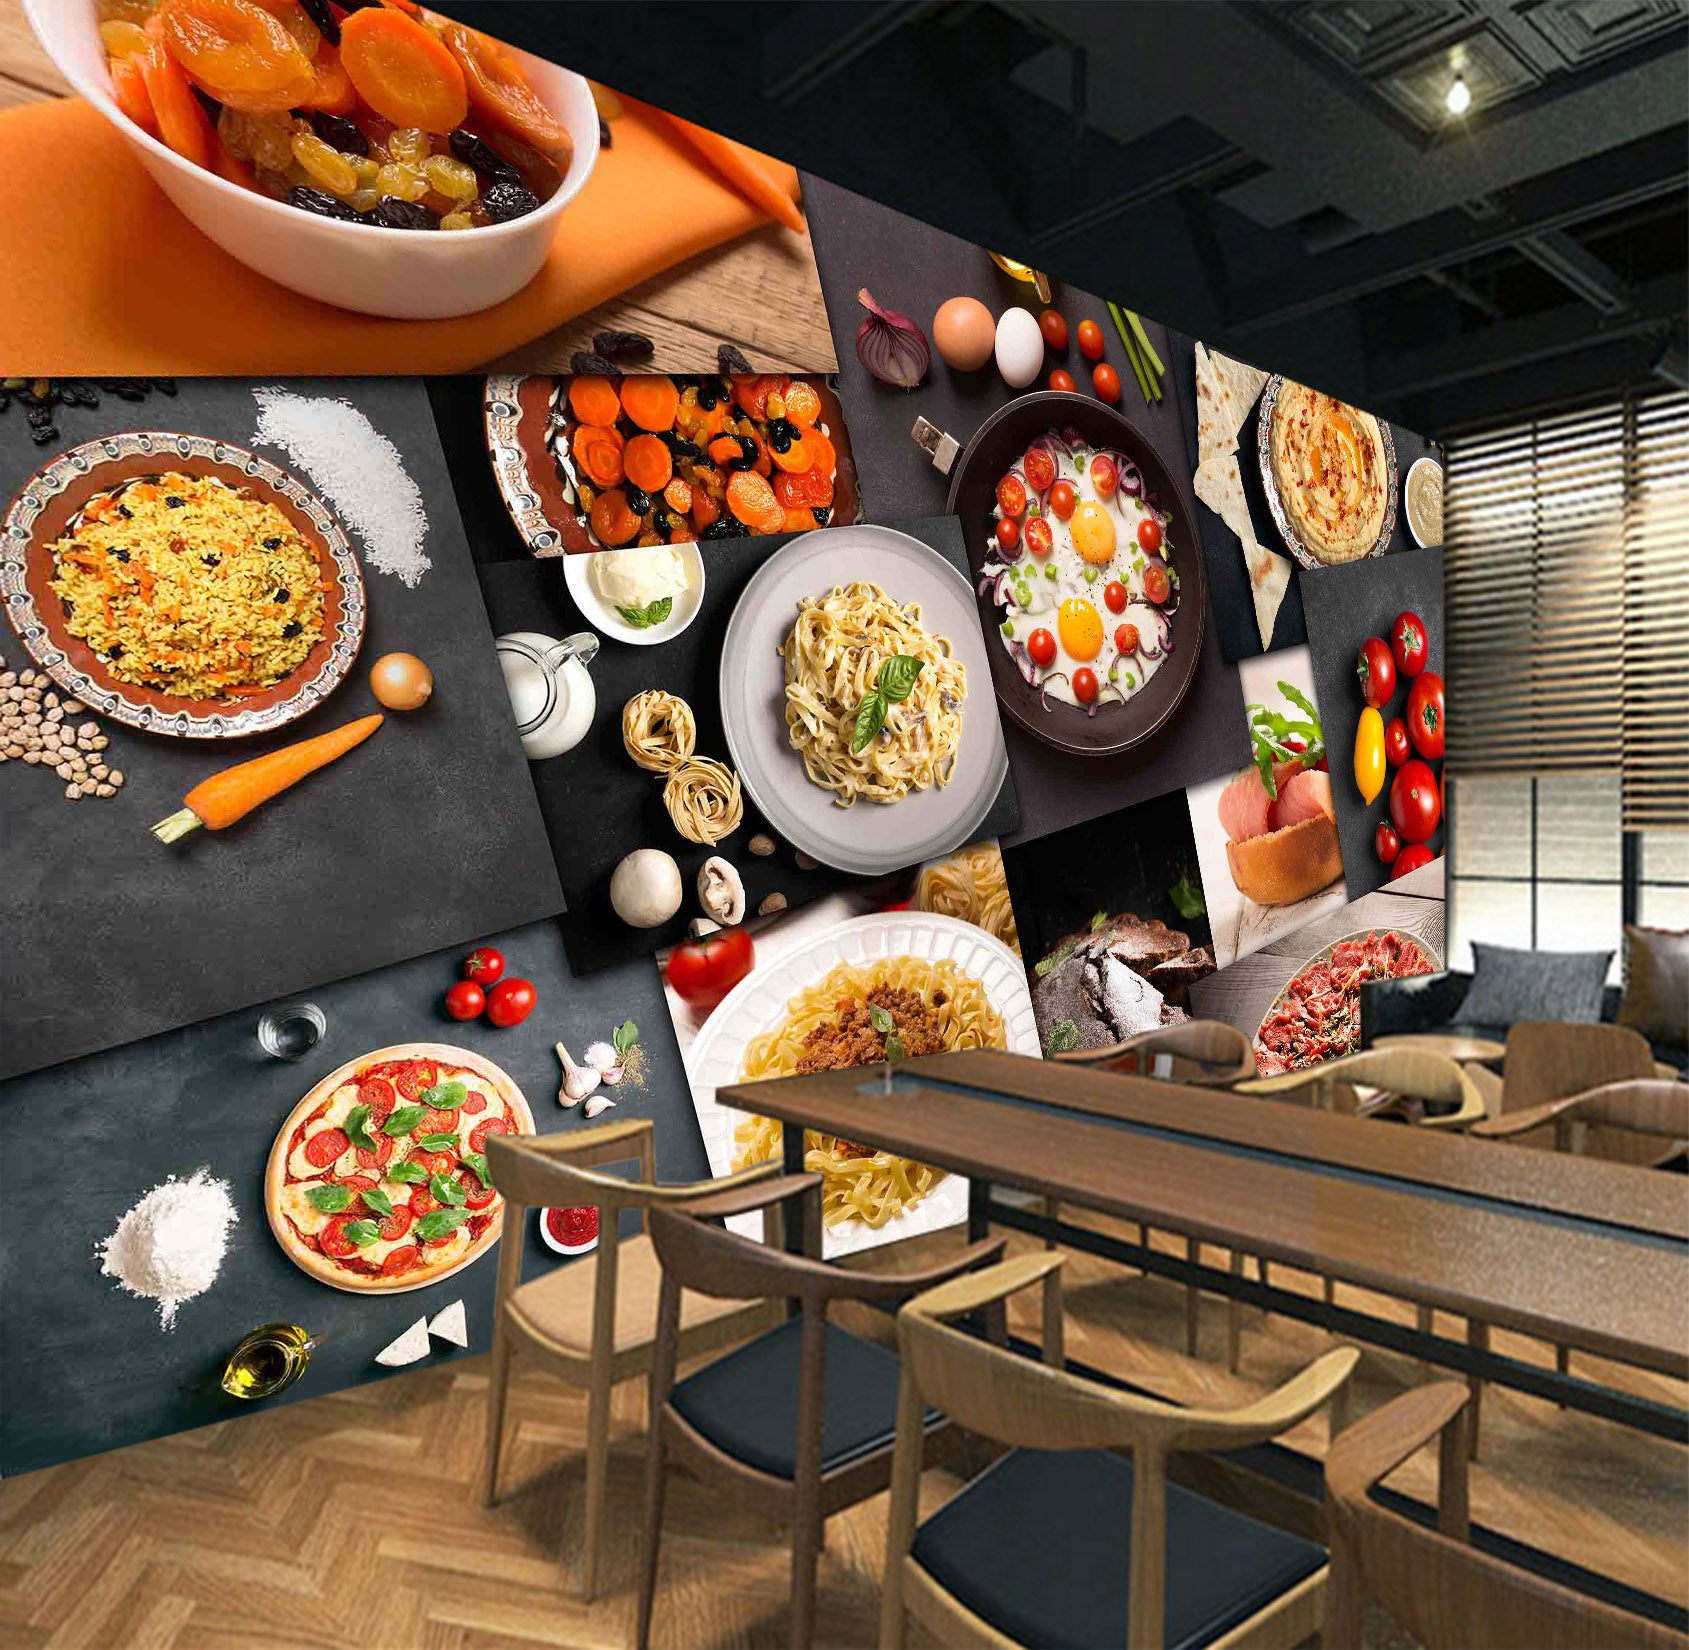 3D Delicious Food 1081 Wall Murals